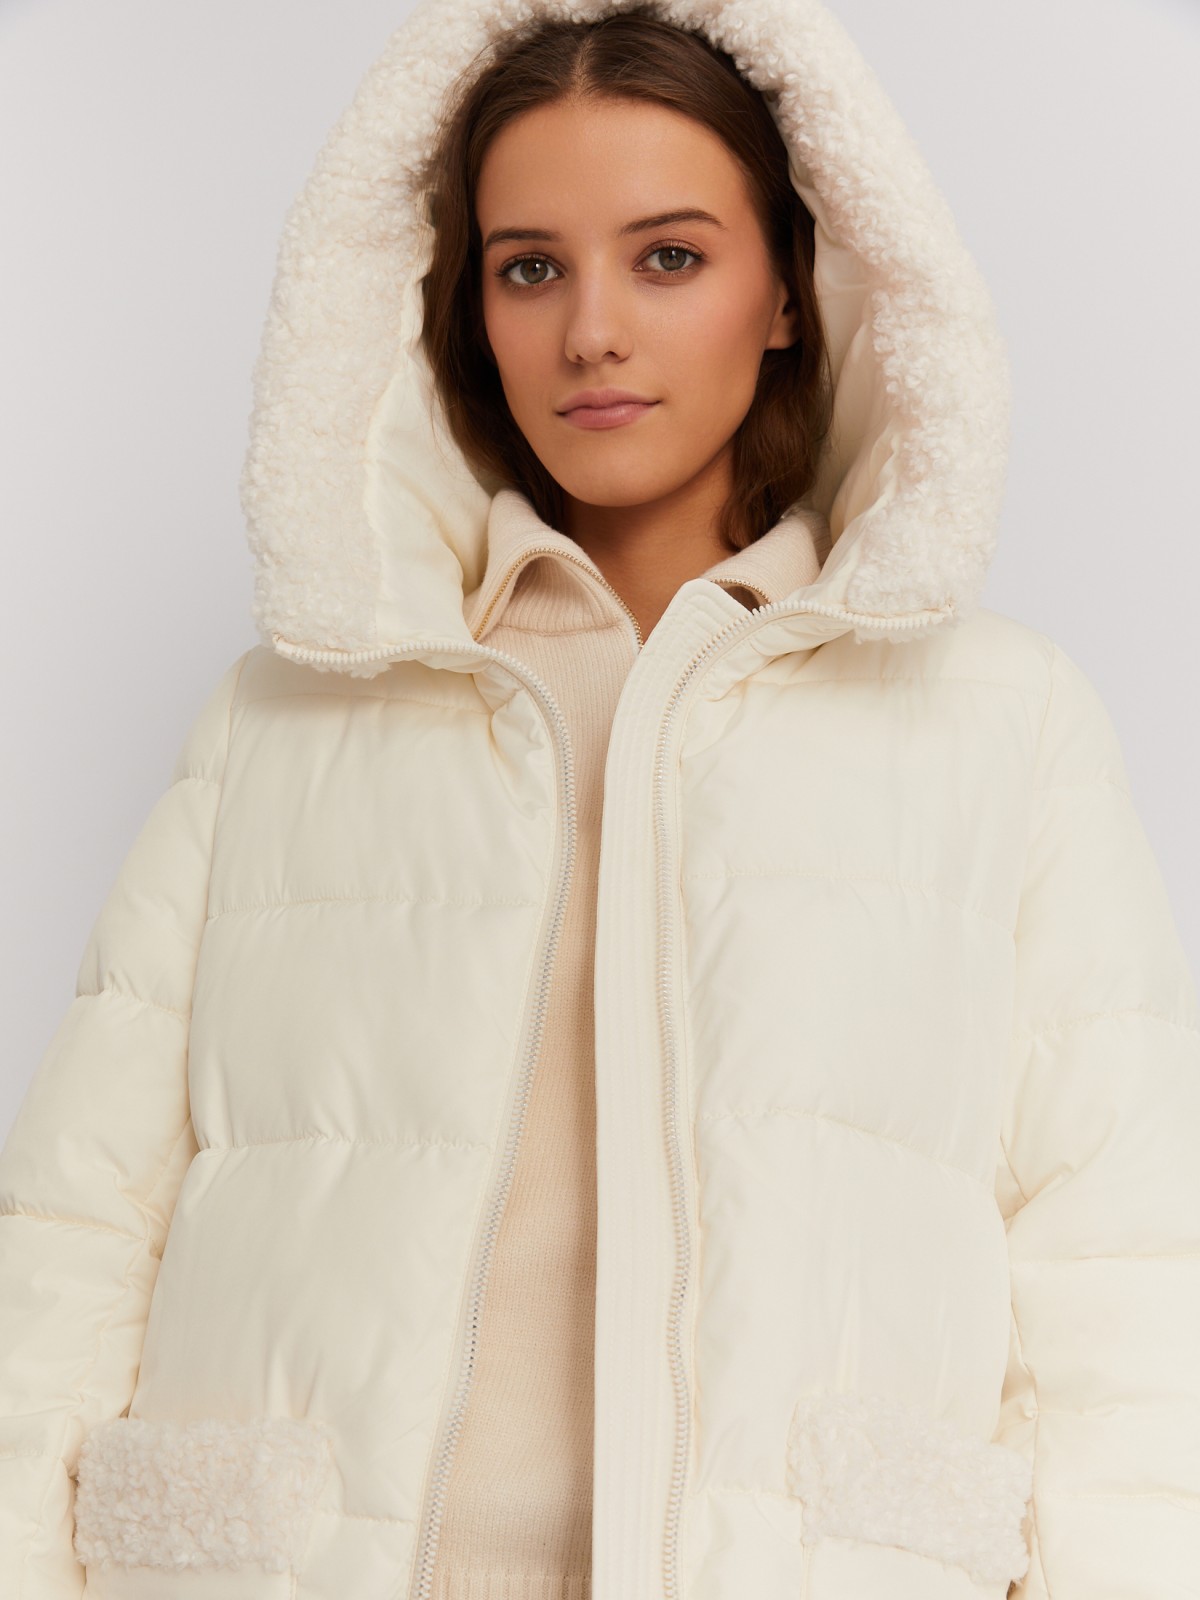 Тёплая куртка-пальто с капюшоном и отделкой из экомеха zolla 022425276044, цвет молоко, размер M - фото 4